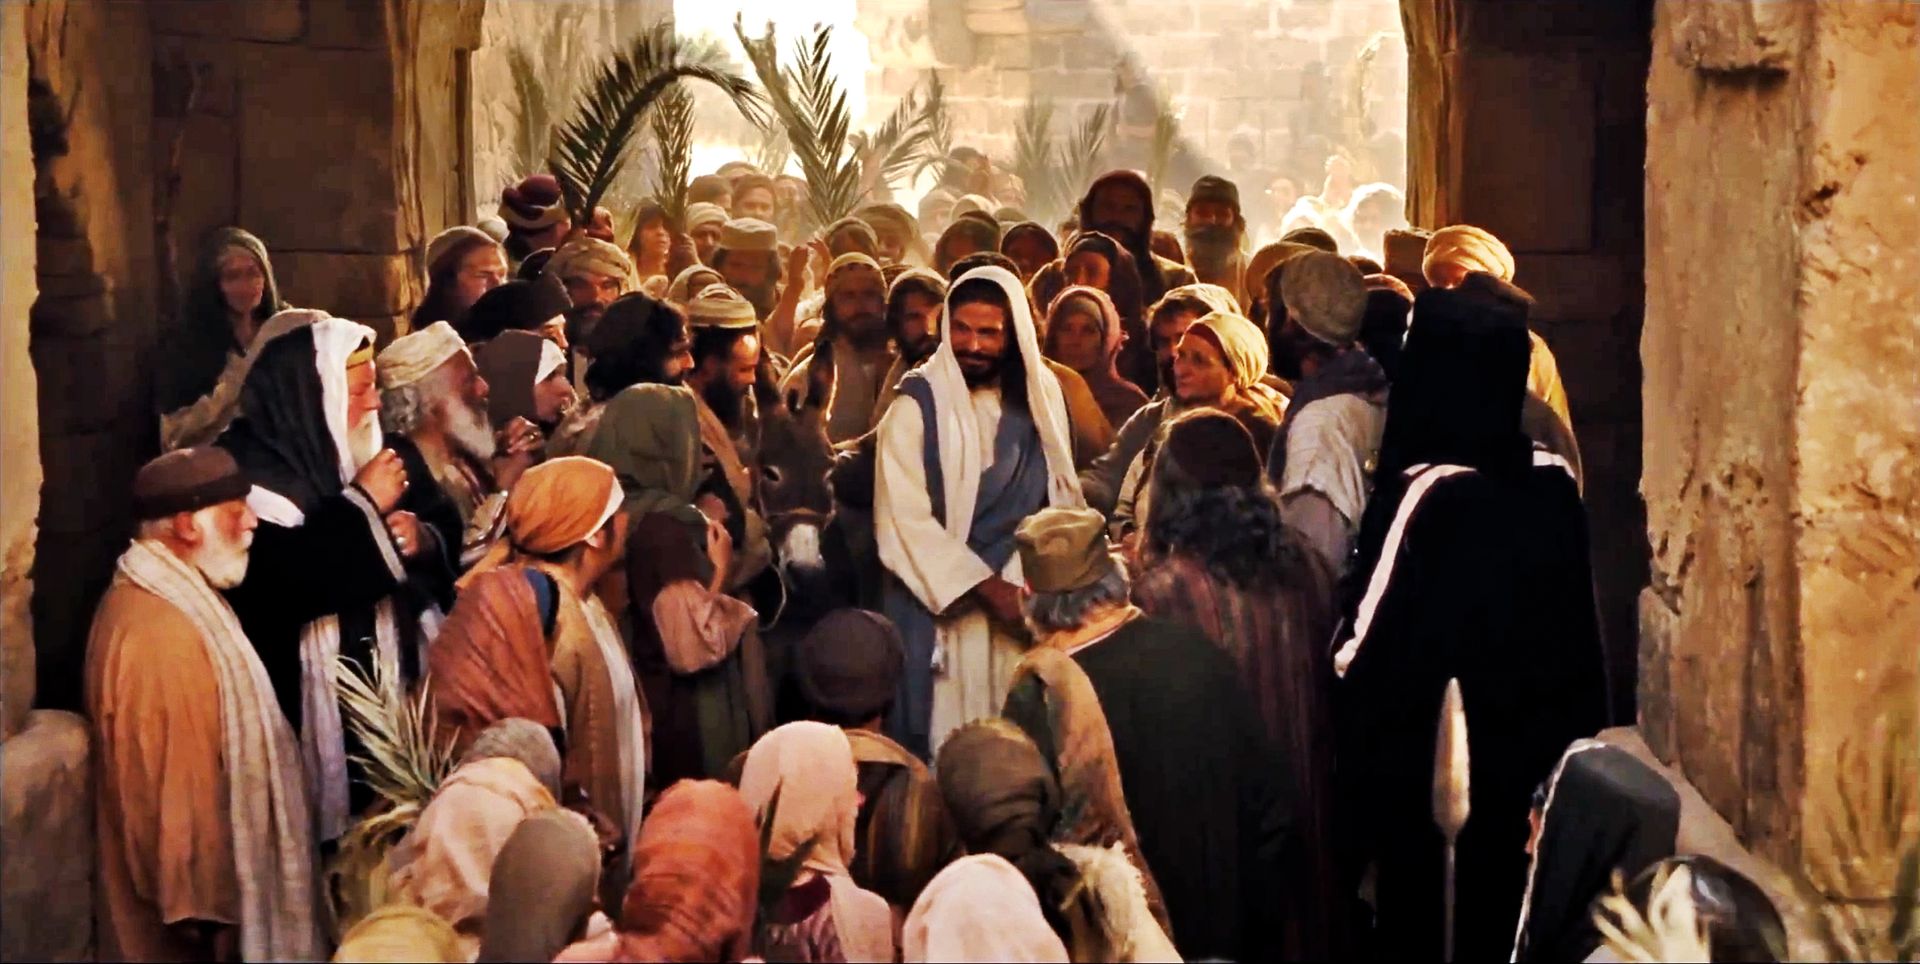 Christ riding into Jerusalem on Palm Sunday.